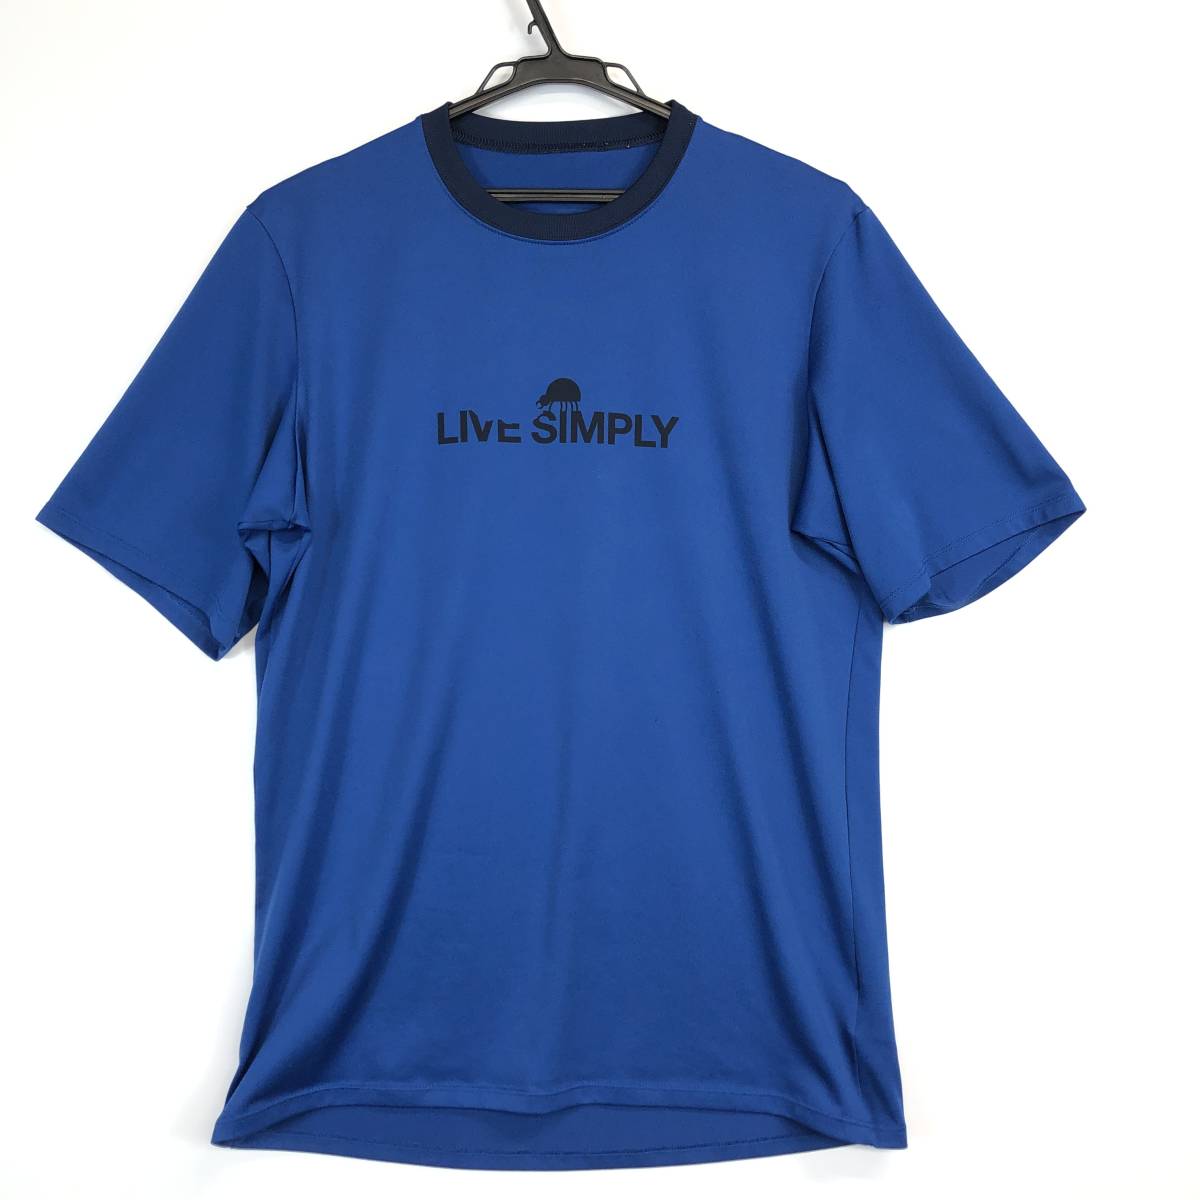 パタゴニア キャプリーン1 シルクウェイト グラフィック Tシャツ PATAGONIA 45320 ブルー LIVE SIMPLY メンズMサイズ_画像1